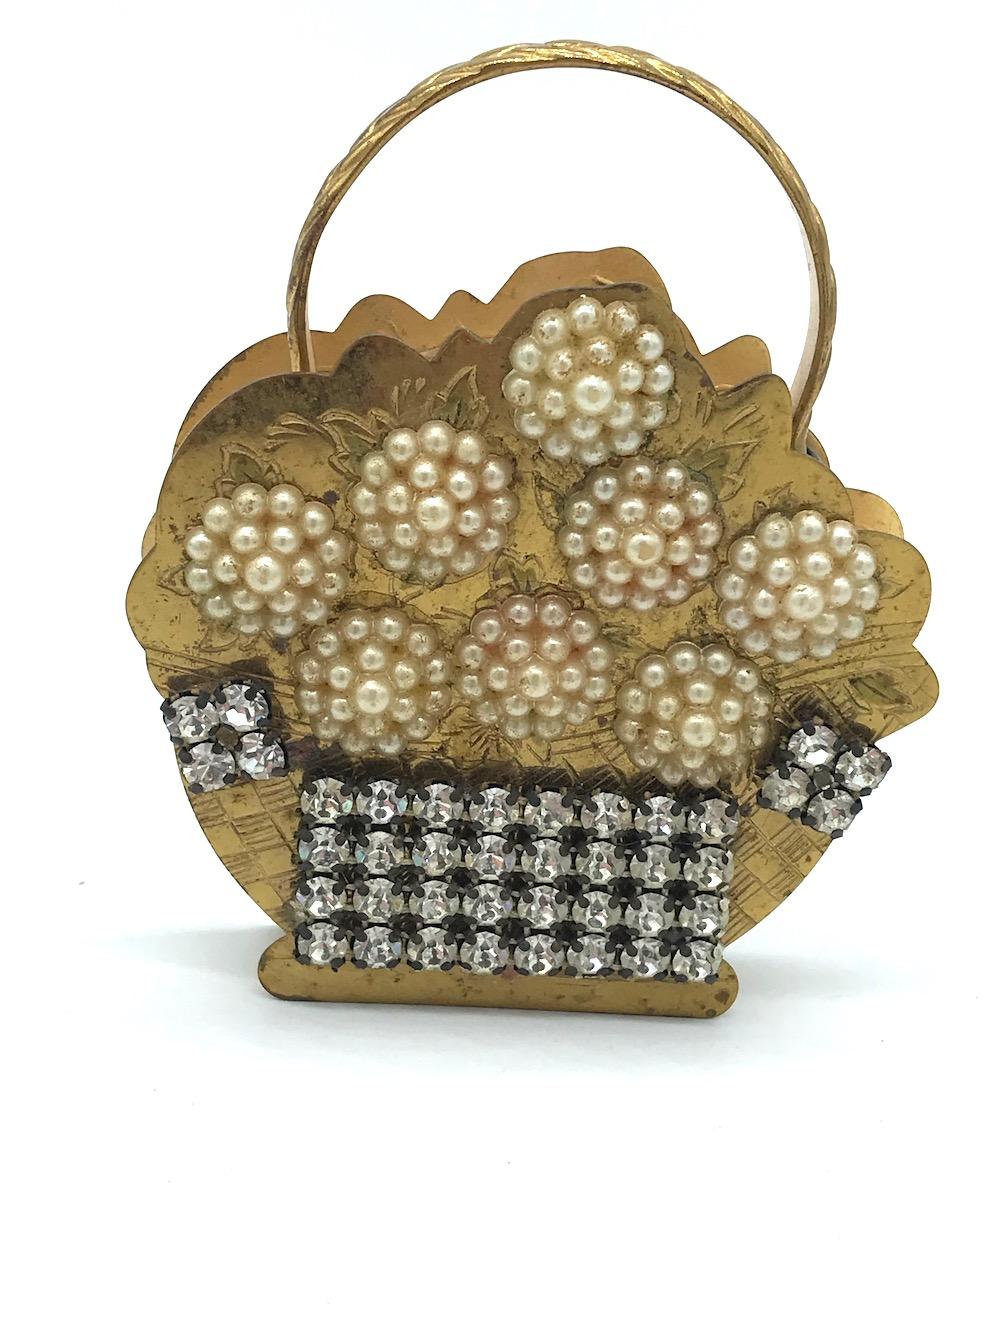 18th century purse